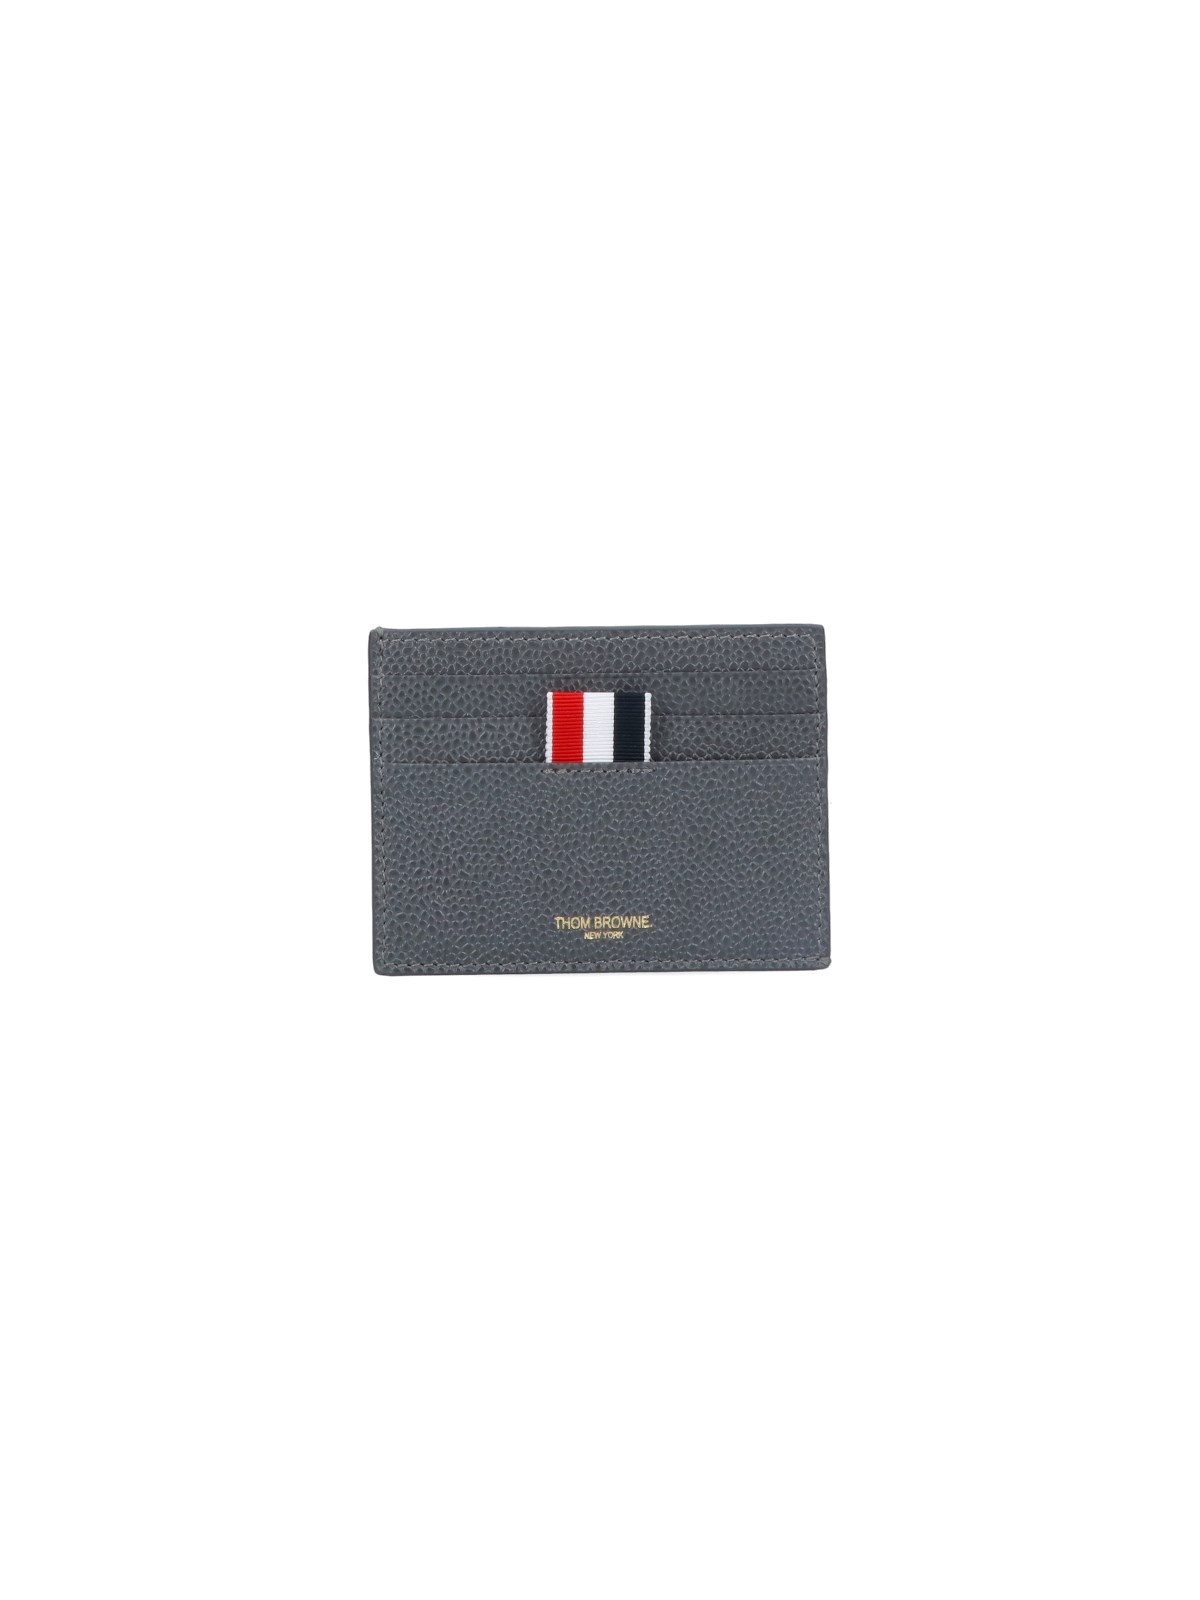 LOGO CARD CASE - 1